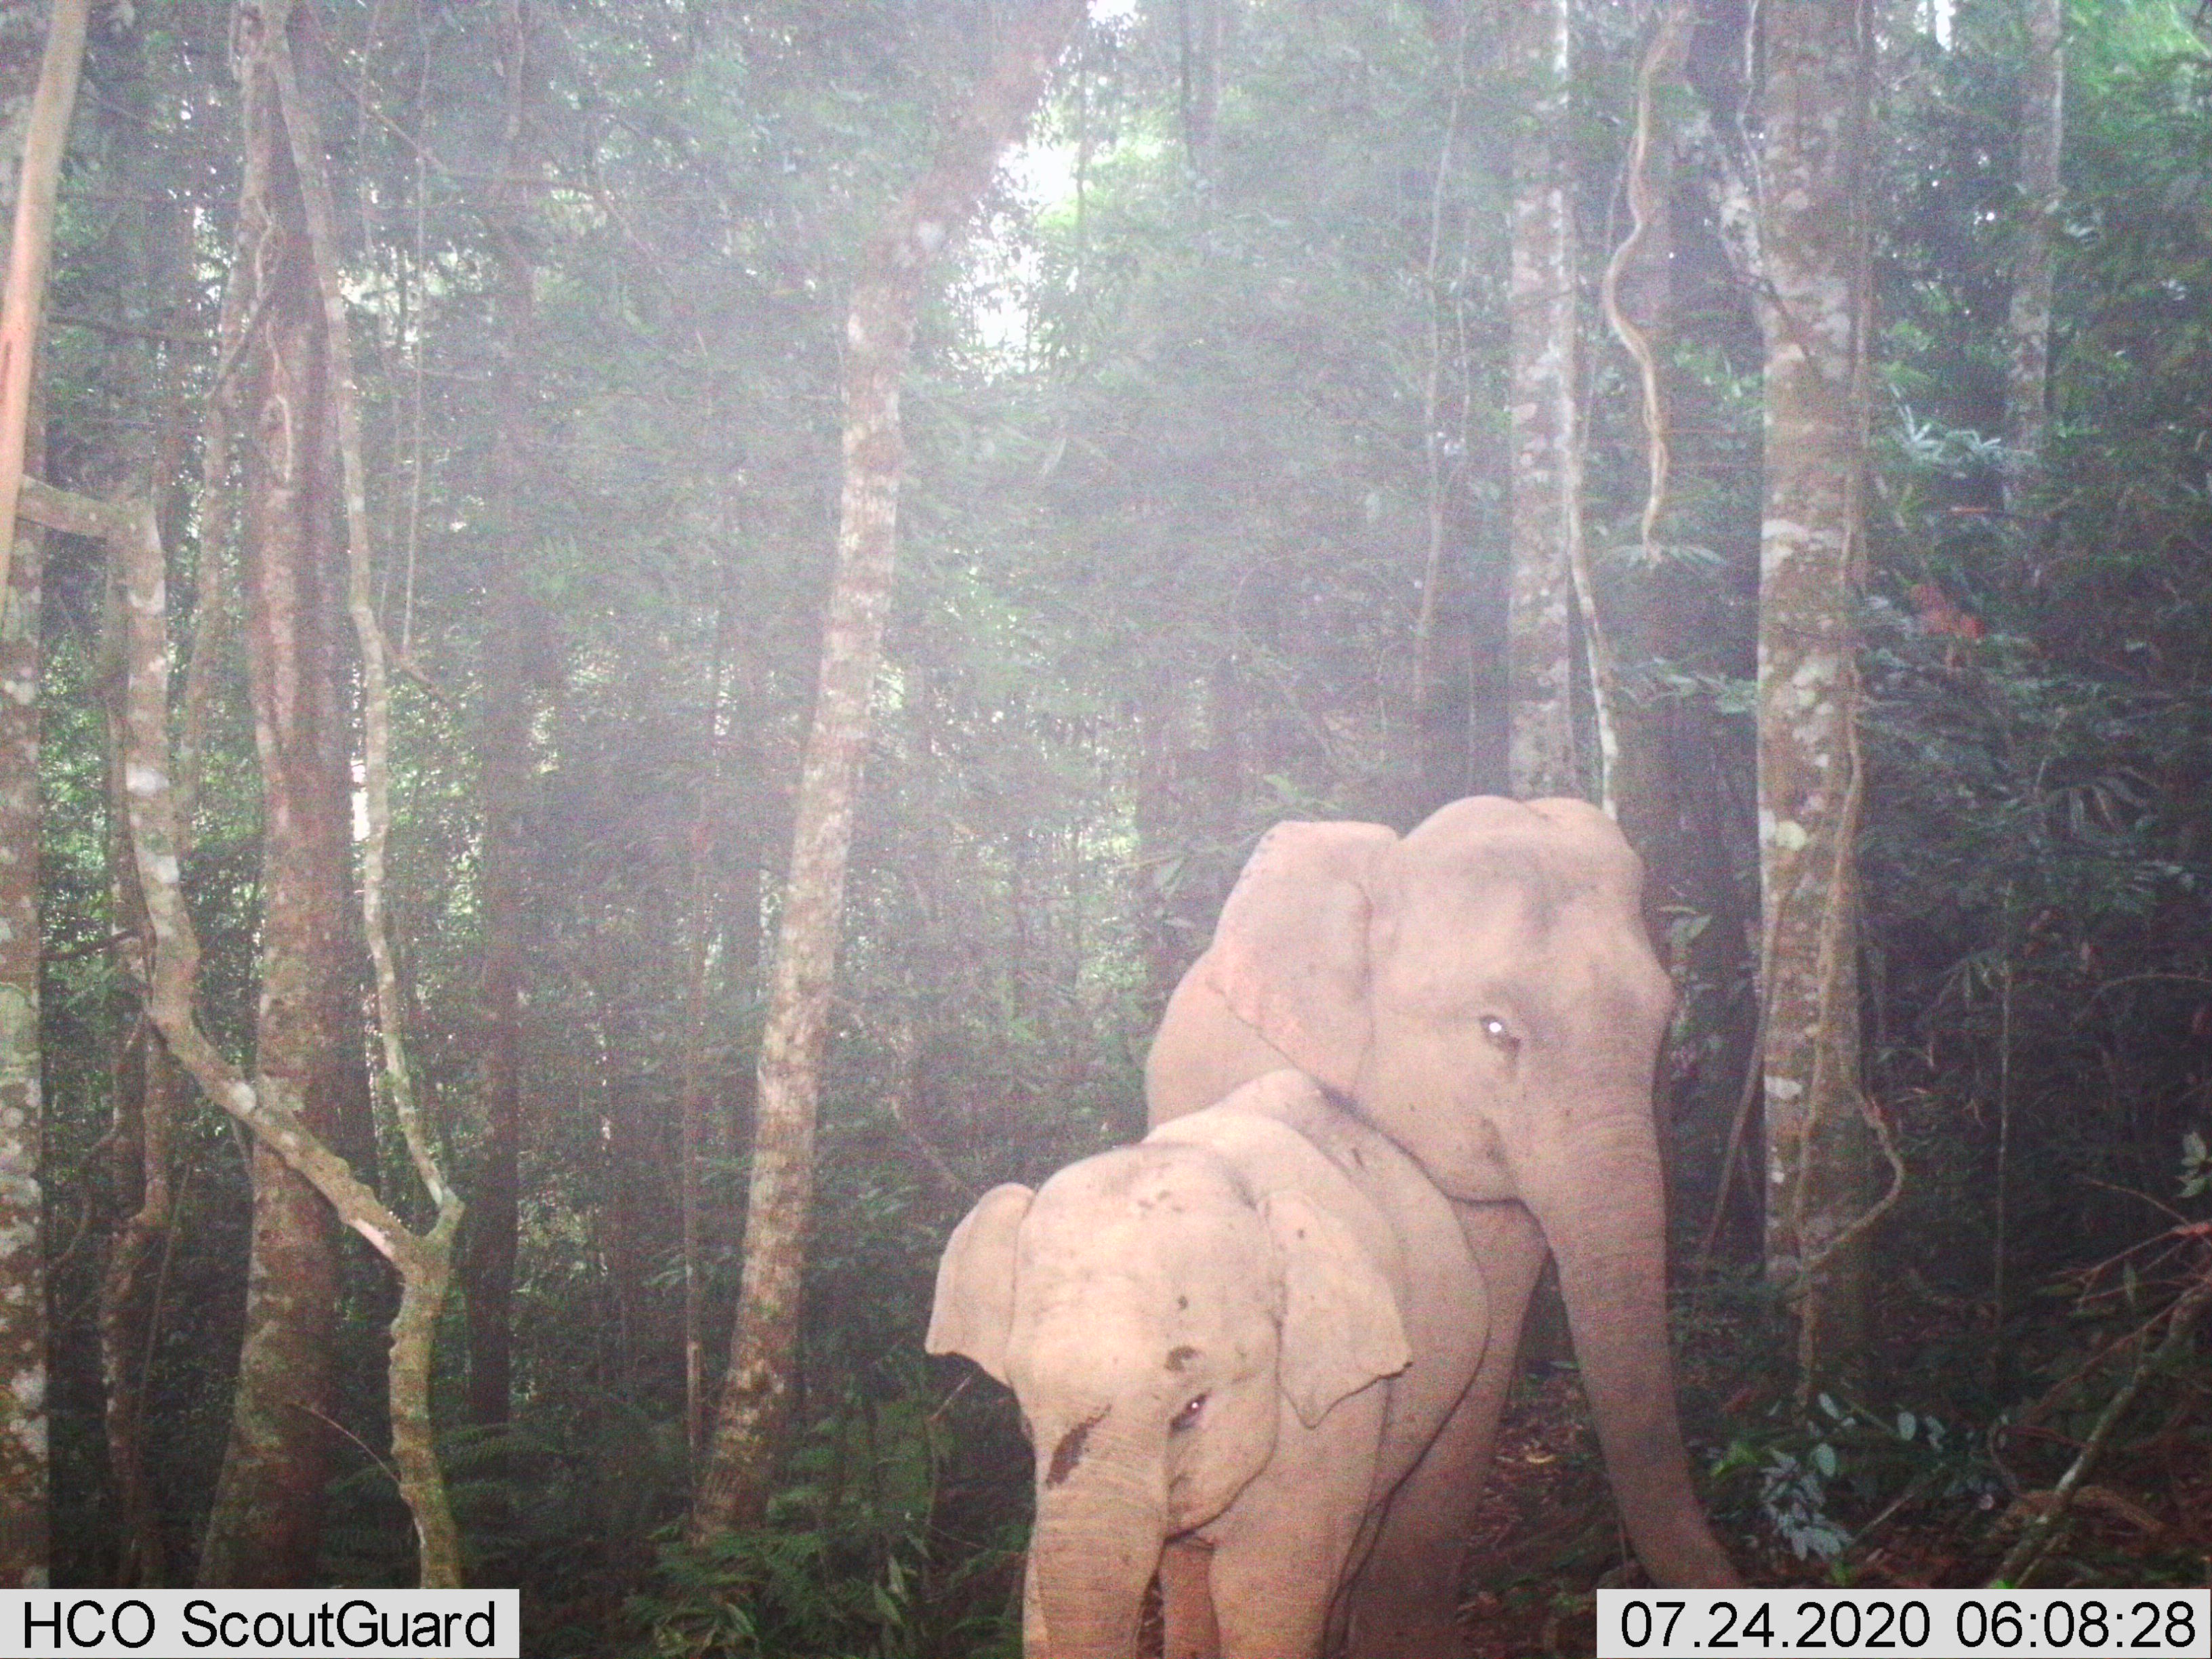 นิเวศวิทยาและประชากรช้างป่า (Elephas maximus) ในเขตรักษาพันธุ์สัตว์ป่าภูหลวงและเขตรักษาพันธุ์สัตว์ป่าภูเขียว 